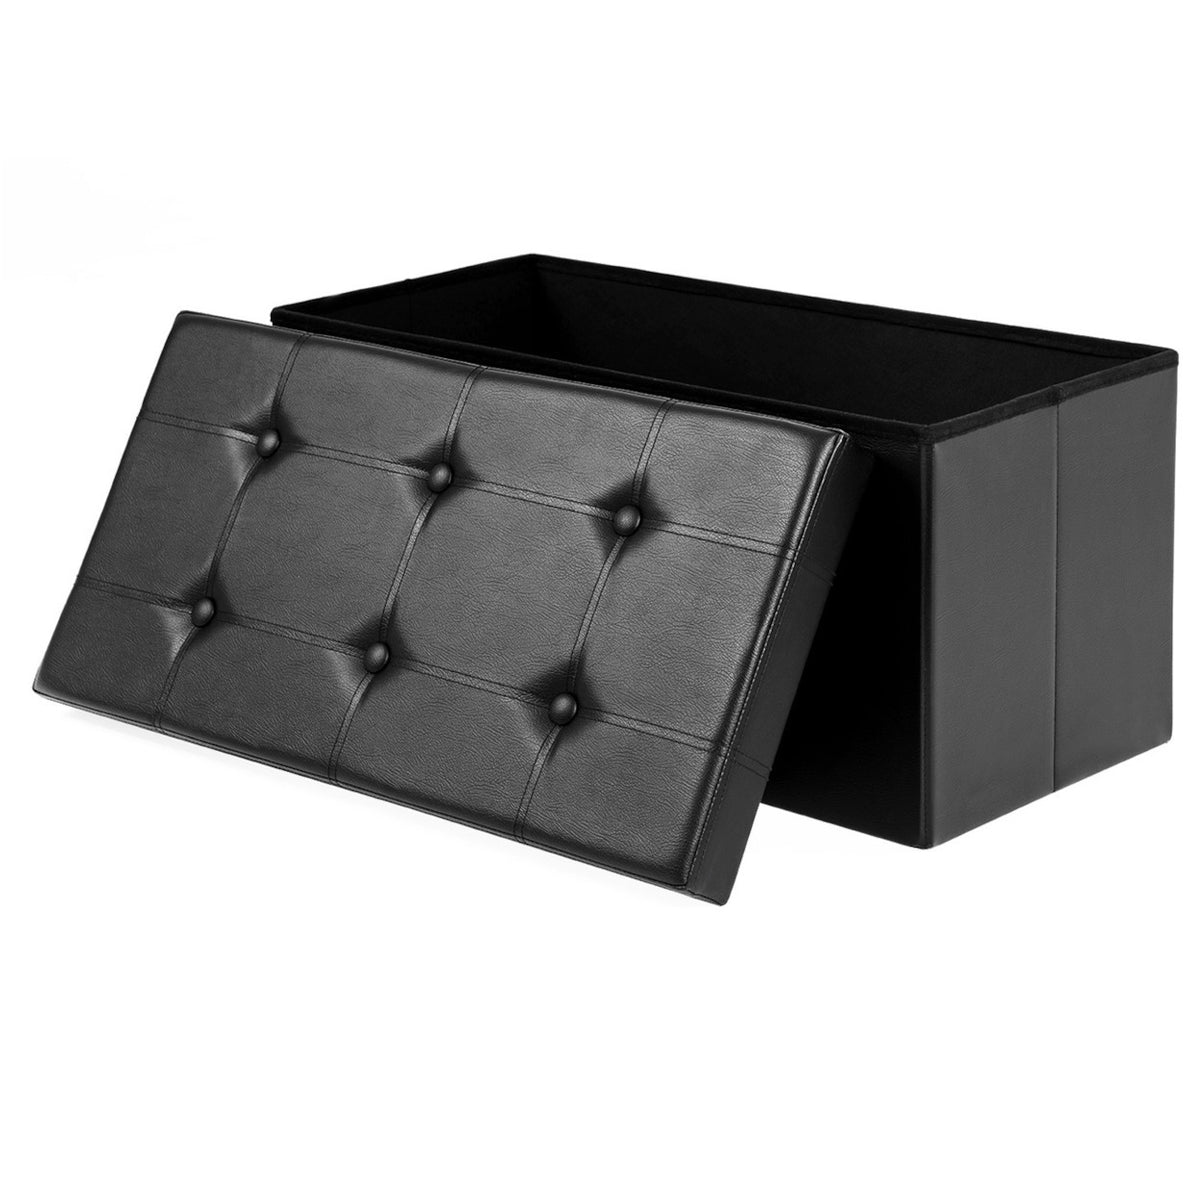 Kožený taburet s úložným prostorem Bklid (černá)